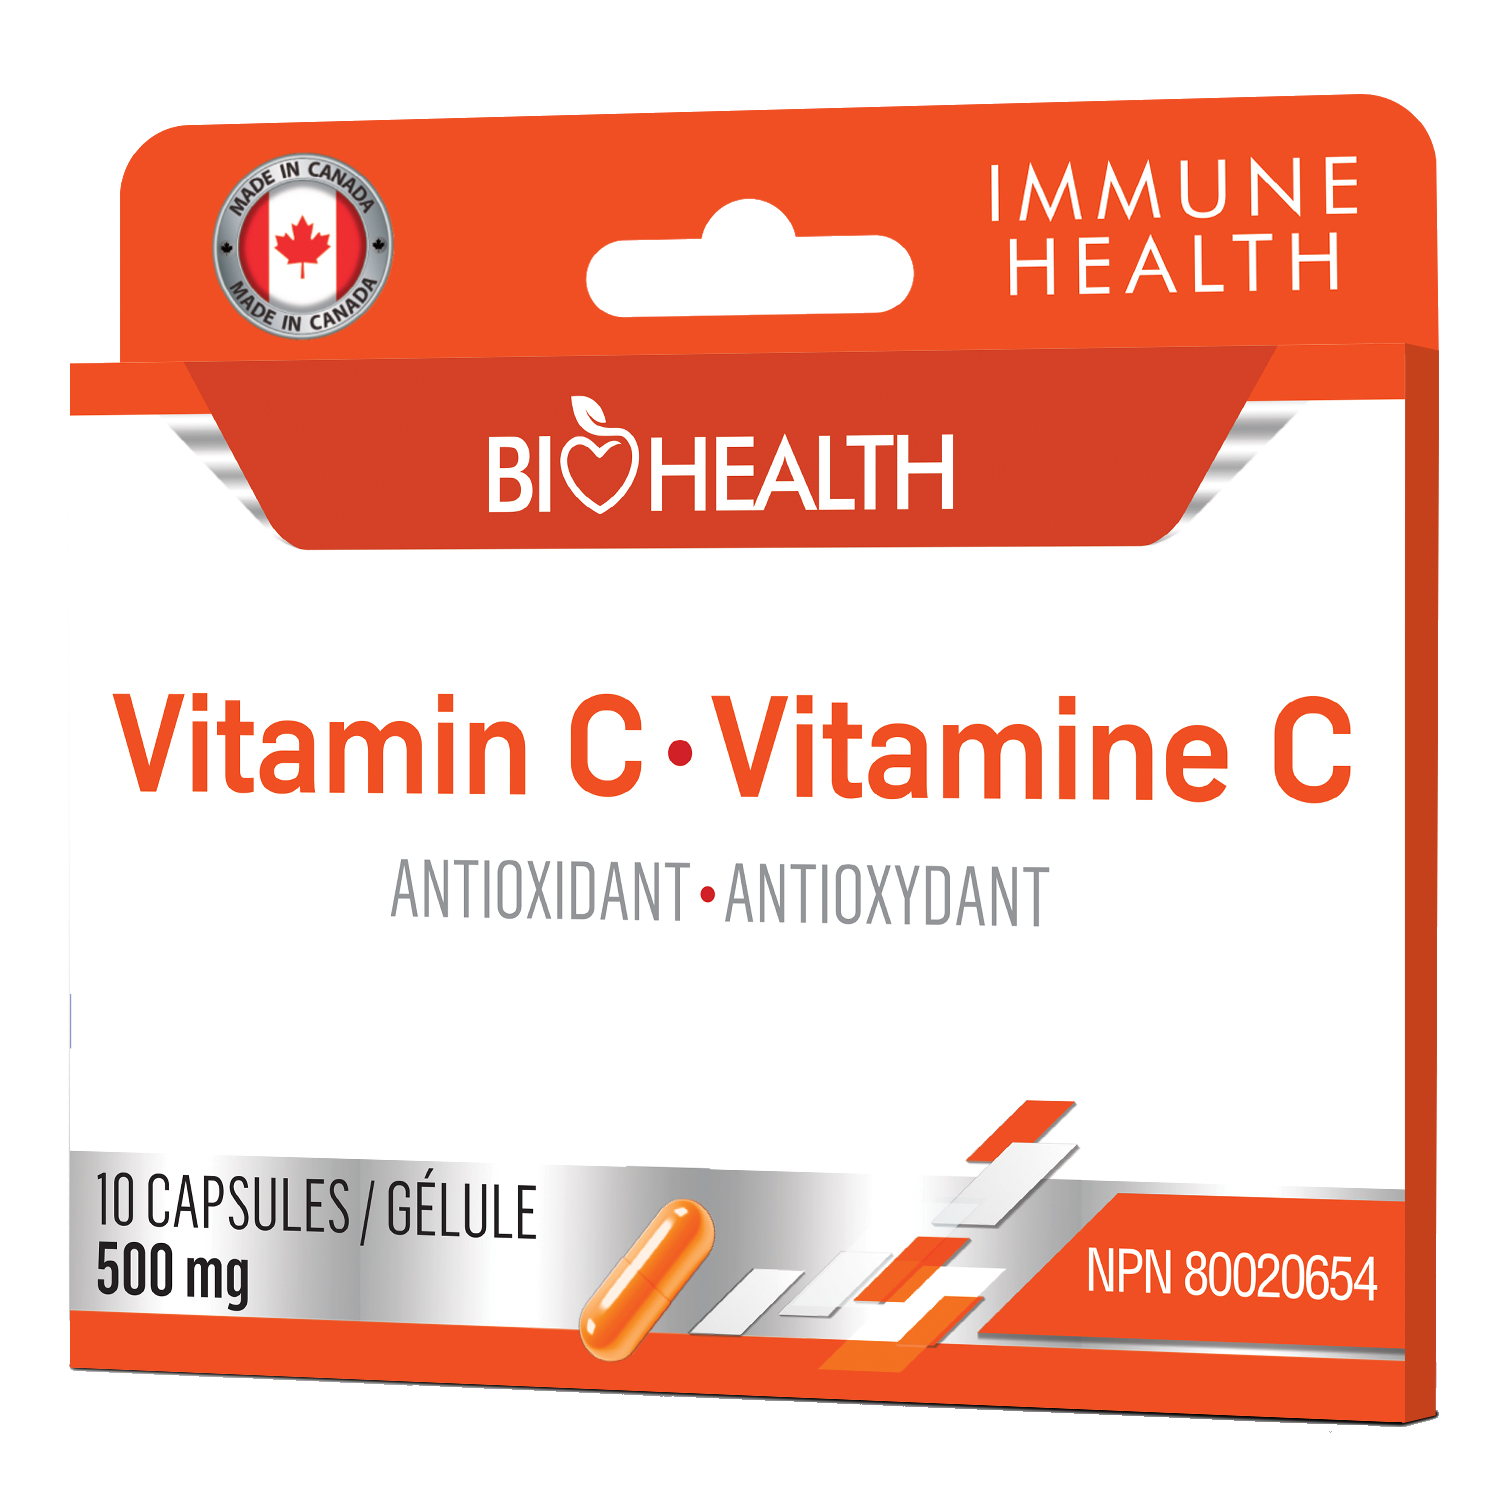 Vitamina C 500 mg